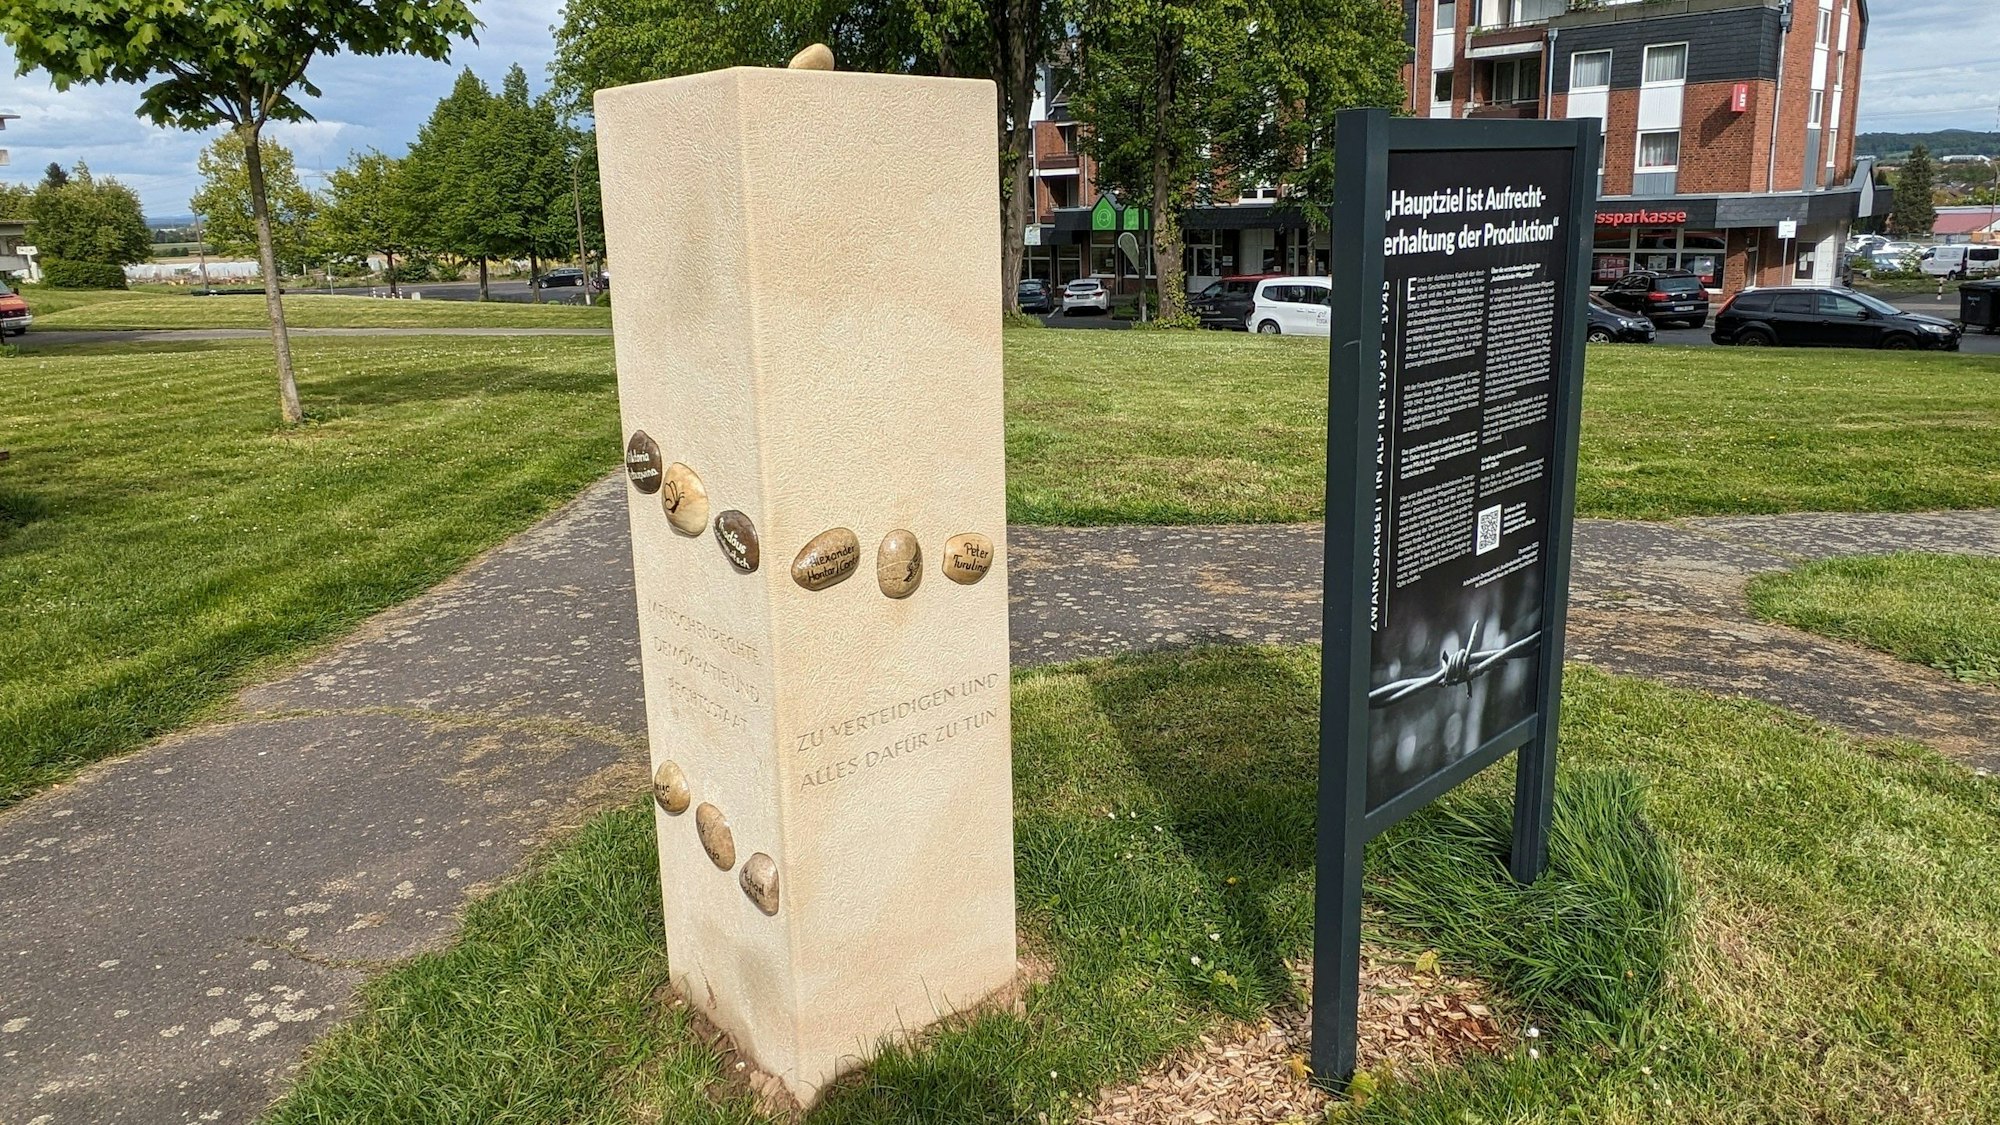 Die Gedenkstätte für die Opfer der sogenannten "Ausländerkinder-Pflegestätte" in Alfter wurde offiziell vor dem Rathaus enthüllt. Foto: Frank Engel-Strebel